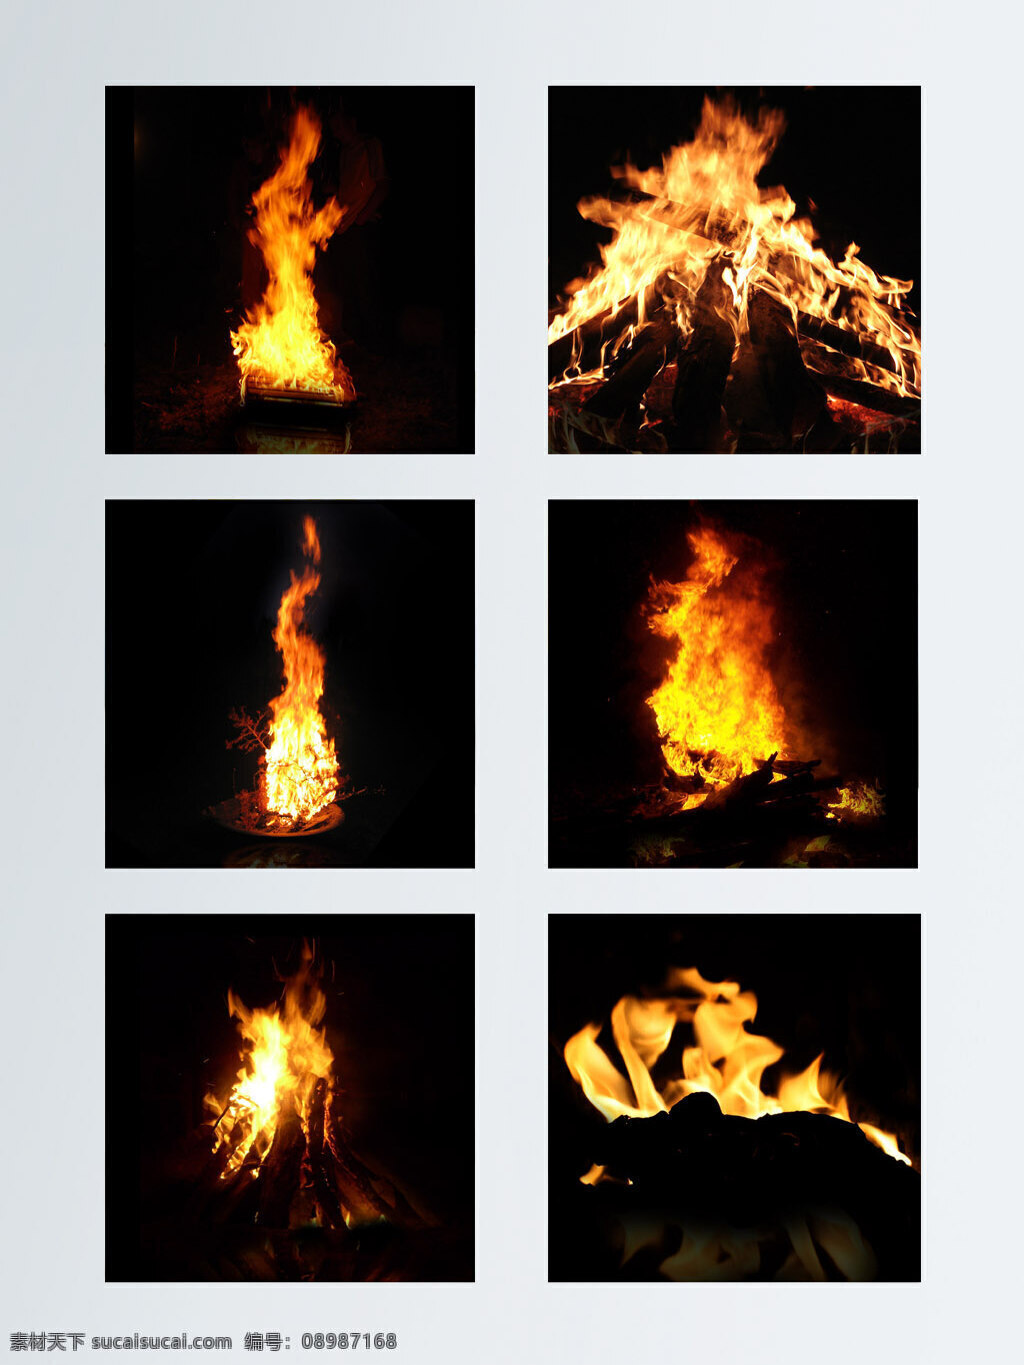 燃烧 火焰 主 图 背景 大火 动感 火海 火苗 火焰效果 金色 烈火 烈焰 燃烧的火焰